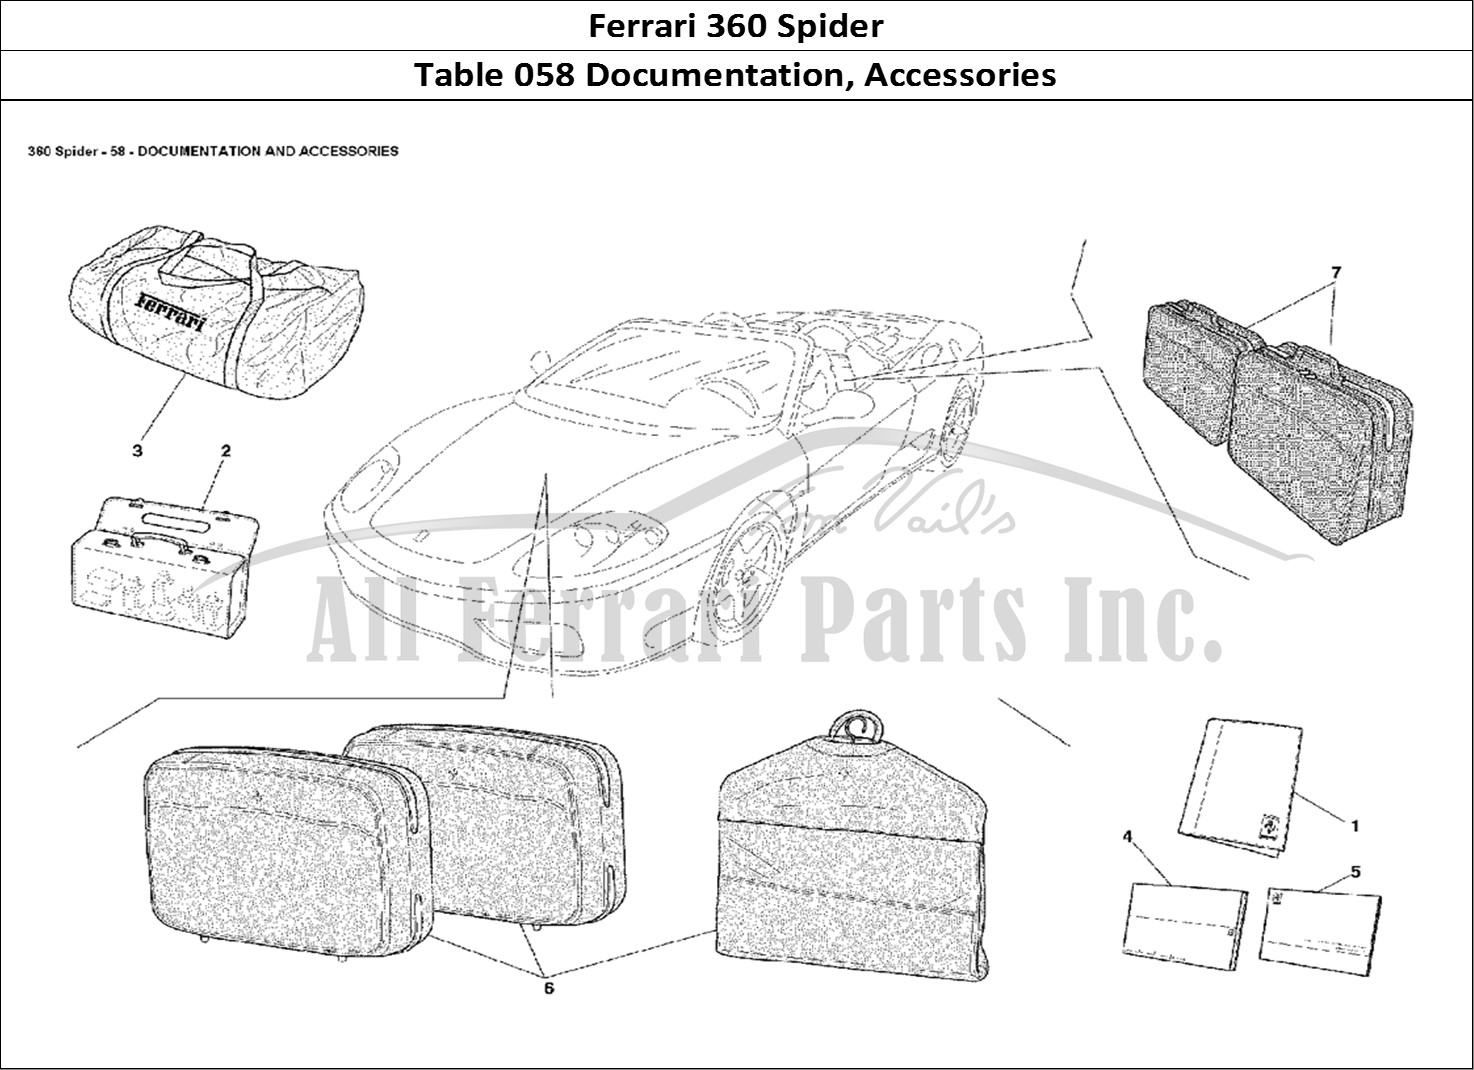 Ferrari Parts Ferrari 360 Spider Page 058 Documentation and Accesso